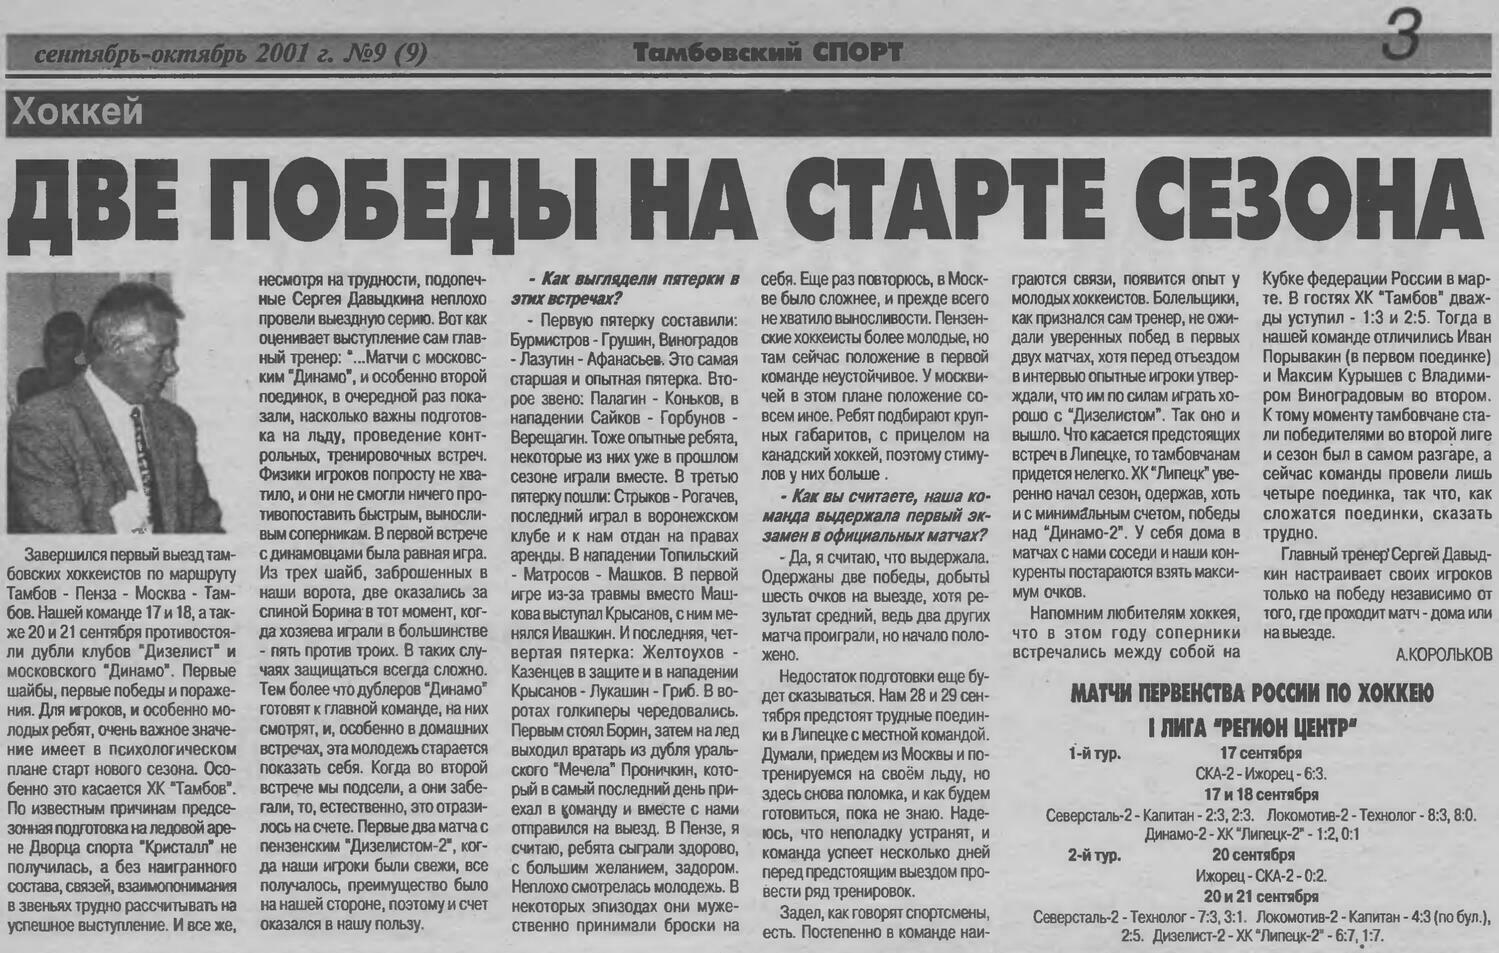 Газета "Тамбовский спорт" №9 от 09-10.2001г. (Ст. 3)